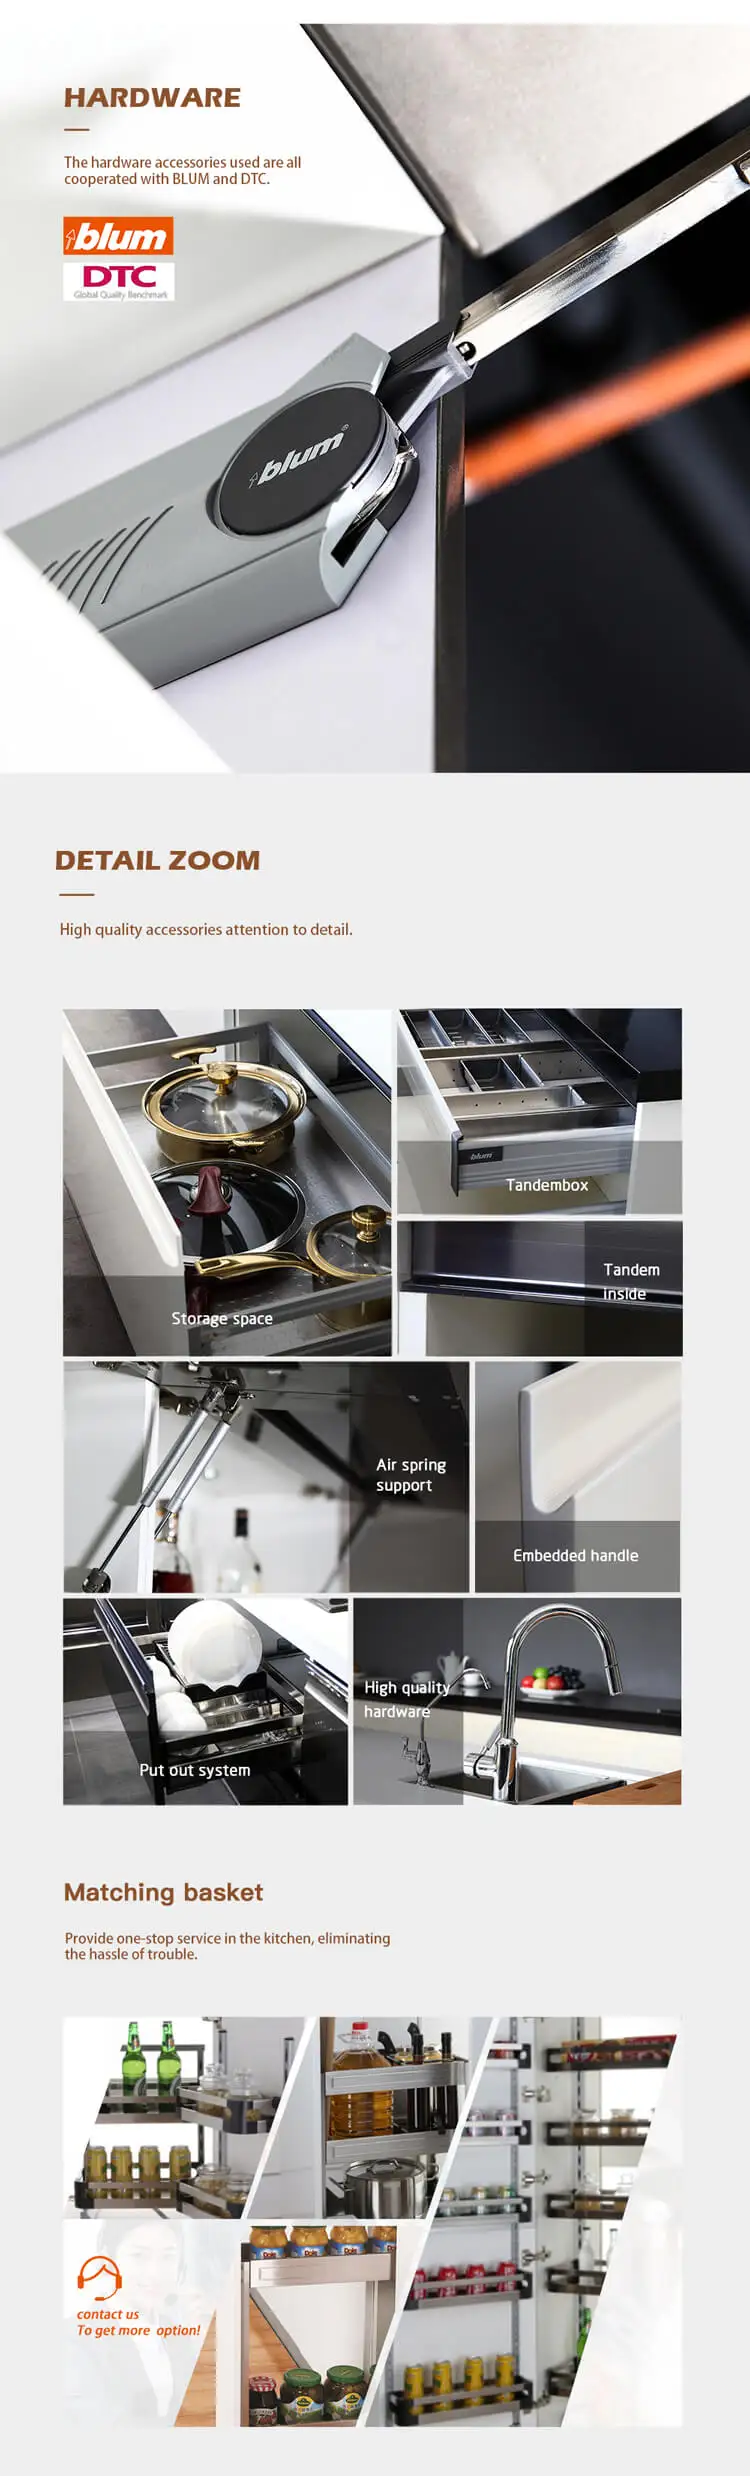 New Design Outdoor Kitchen Stainless Steel Outdoor Kitchen Cabinet